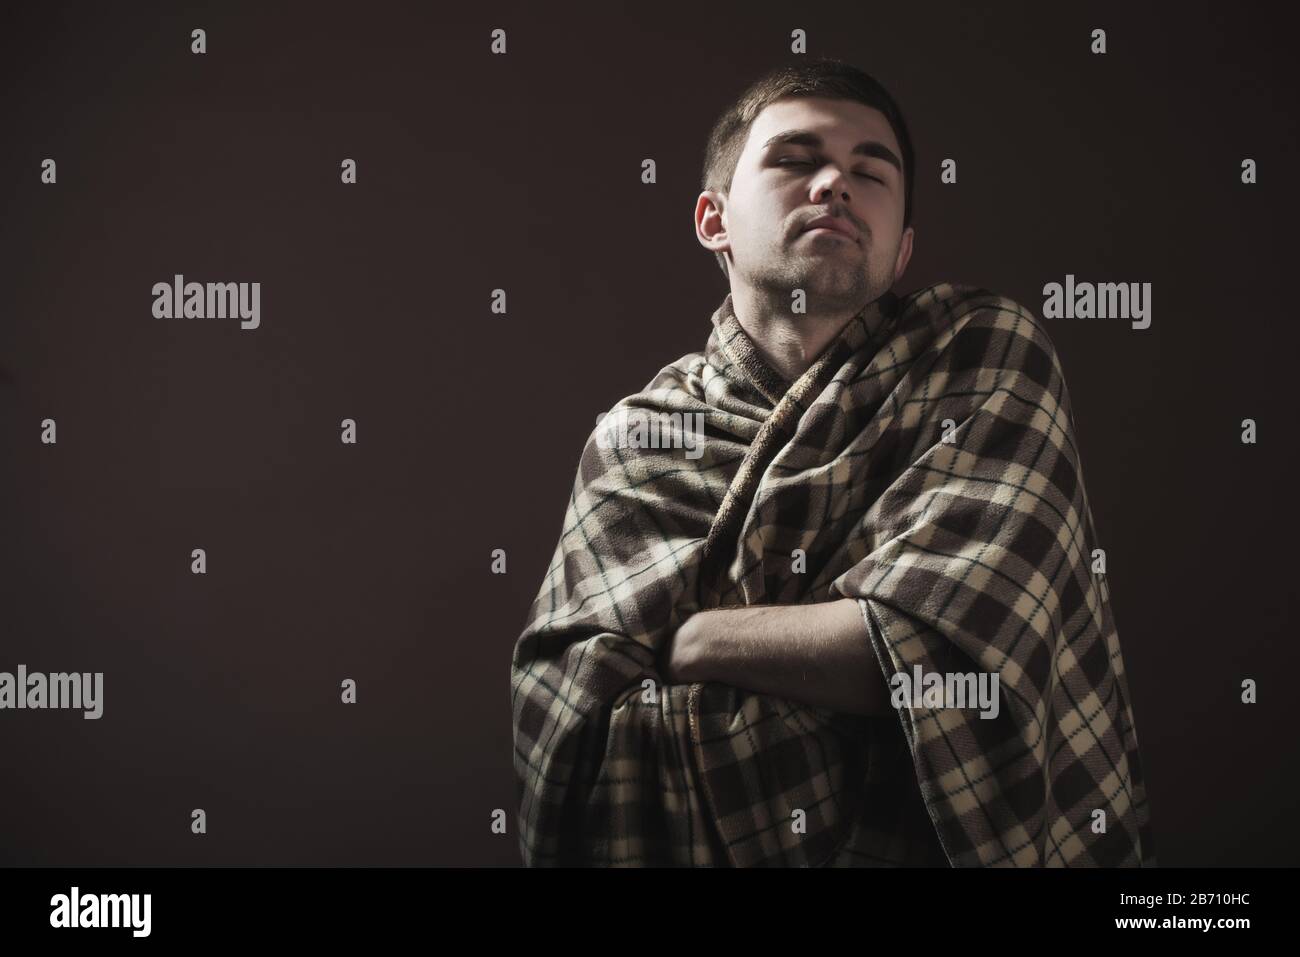 Porträt eines jungen, schläfrigen Mannes, der in eine Pflauge gewickelt ist. Konzept eines harten morgendlichen Erwachens und Arbeitsstimmung Stockfoto